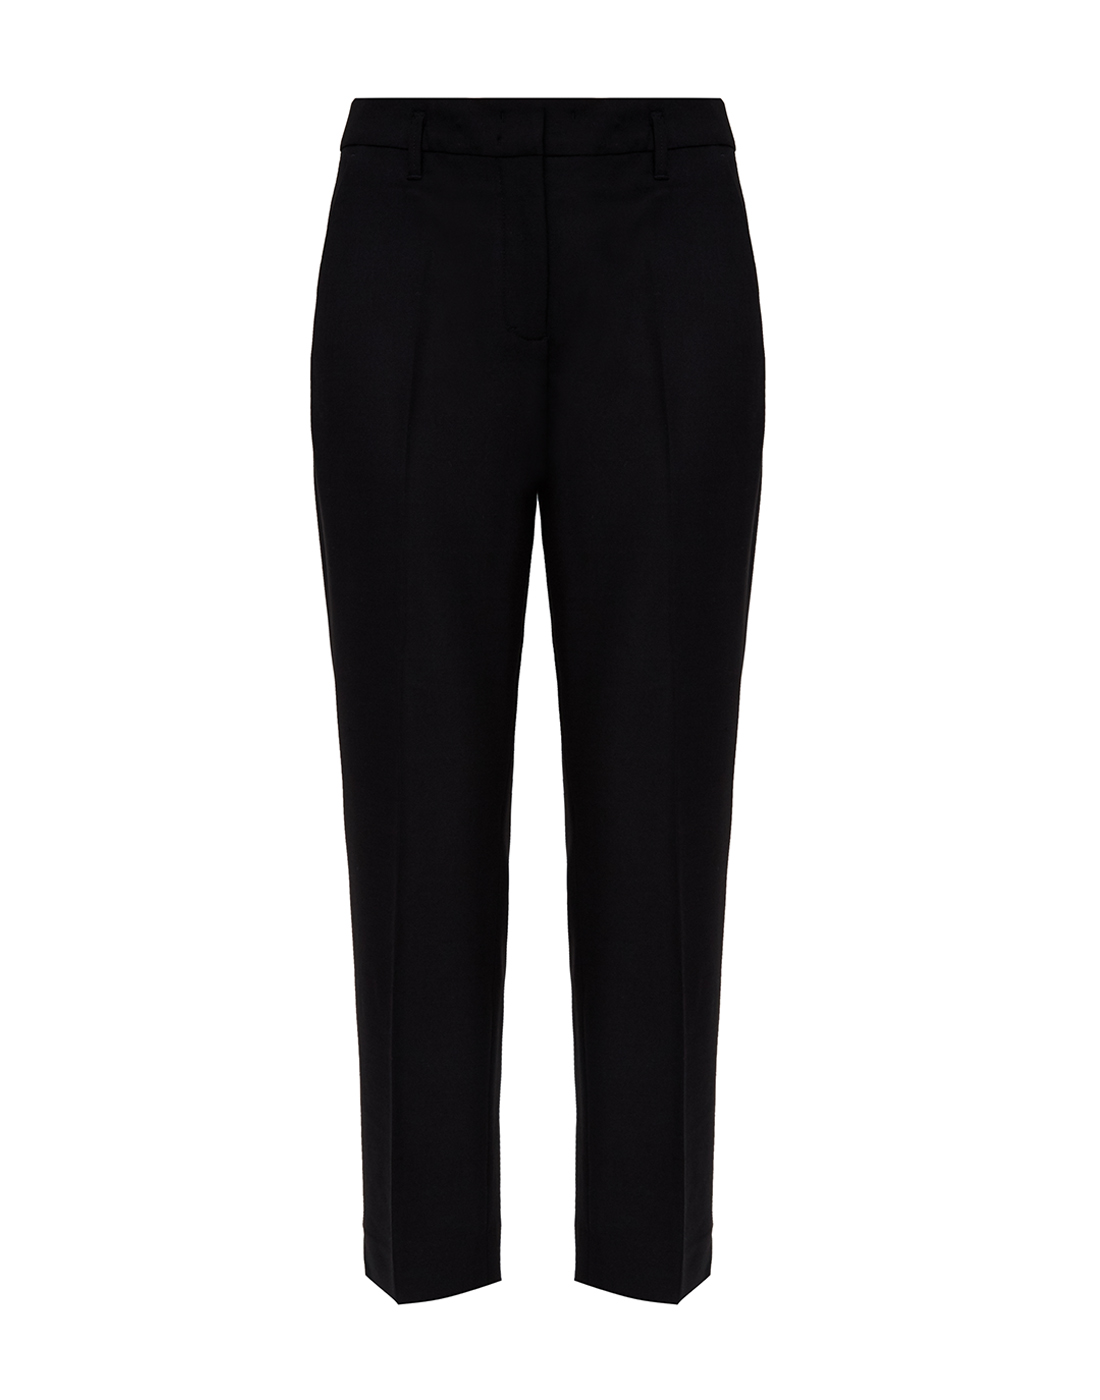 Женские черные брюки Dorothee Schumacher S940203/999-1